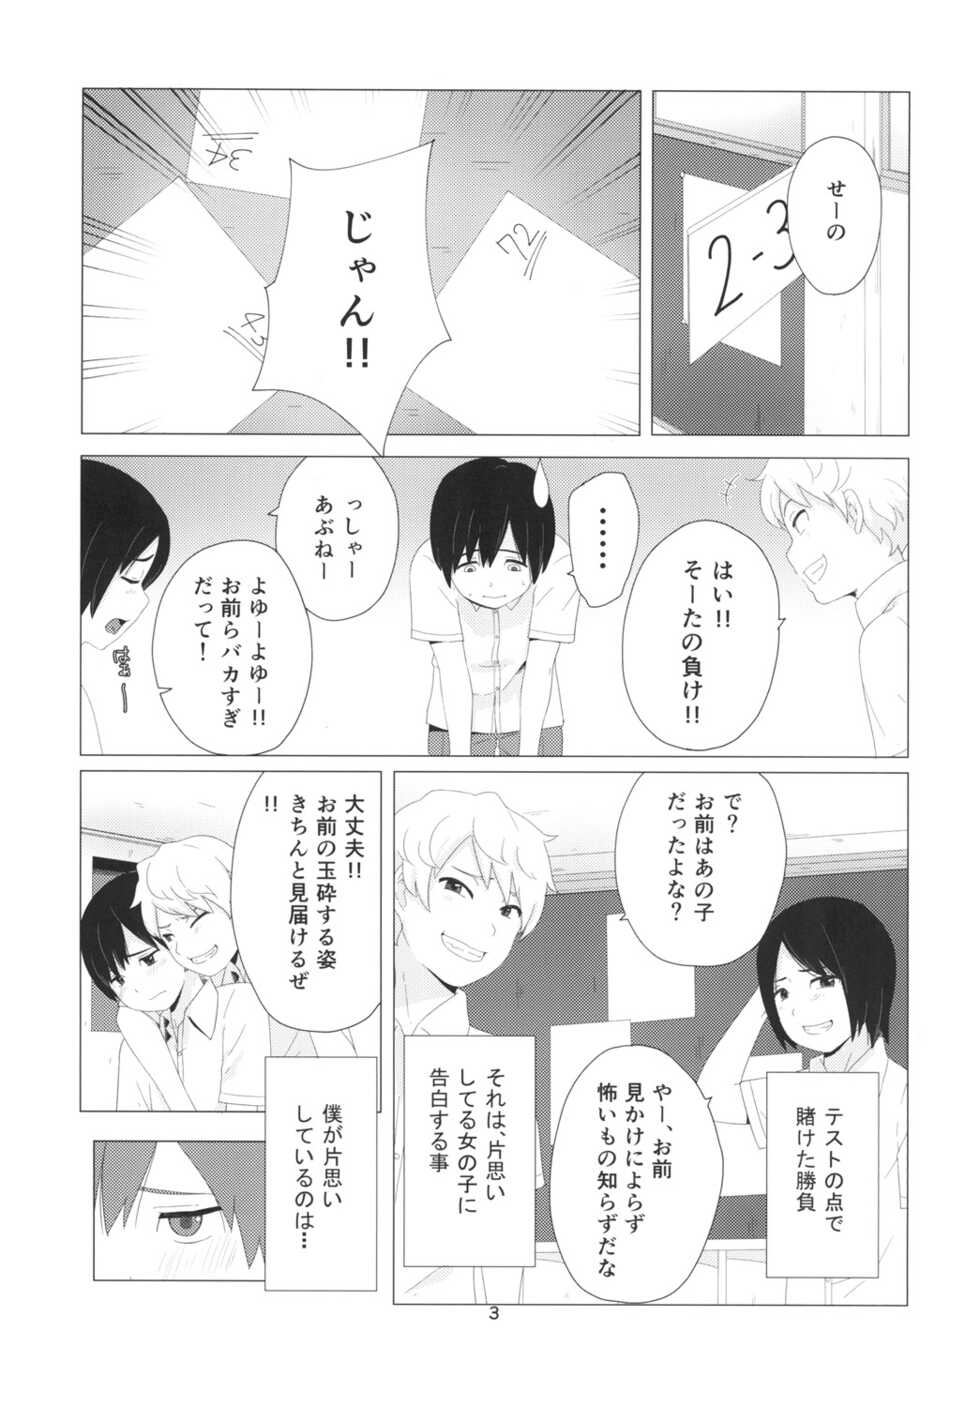 (CT26) [Kiiroi Tamago] Takane no Hana? - Page 3